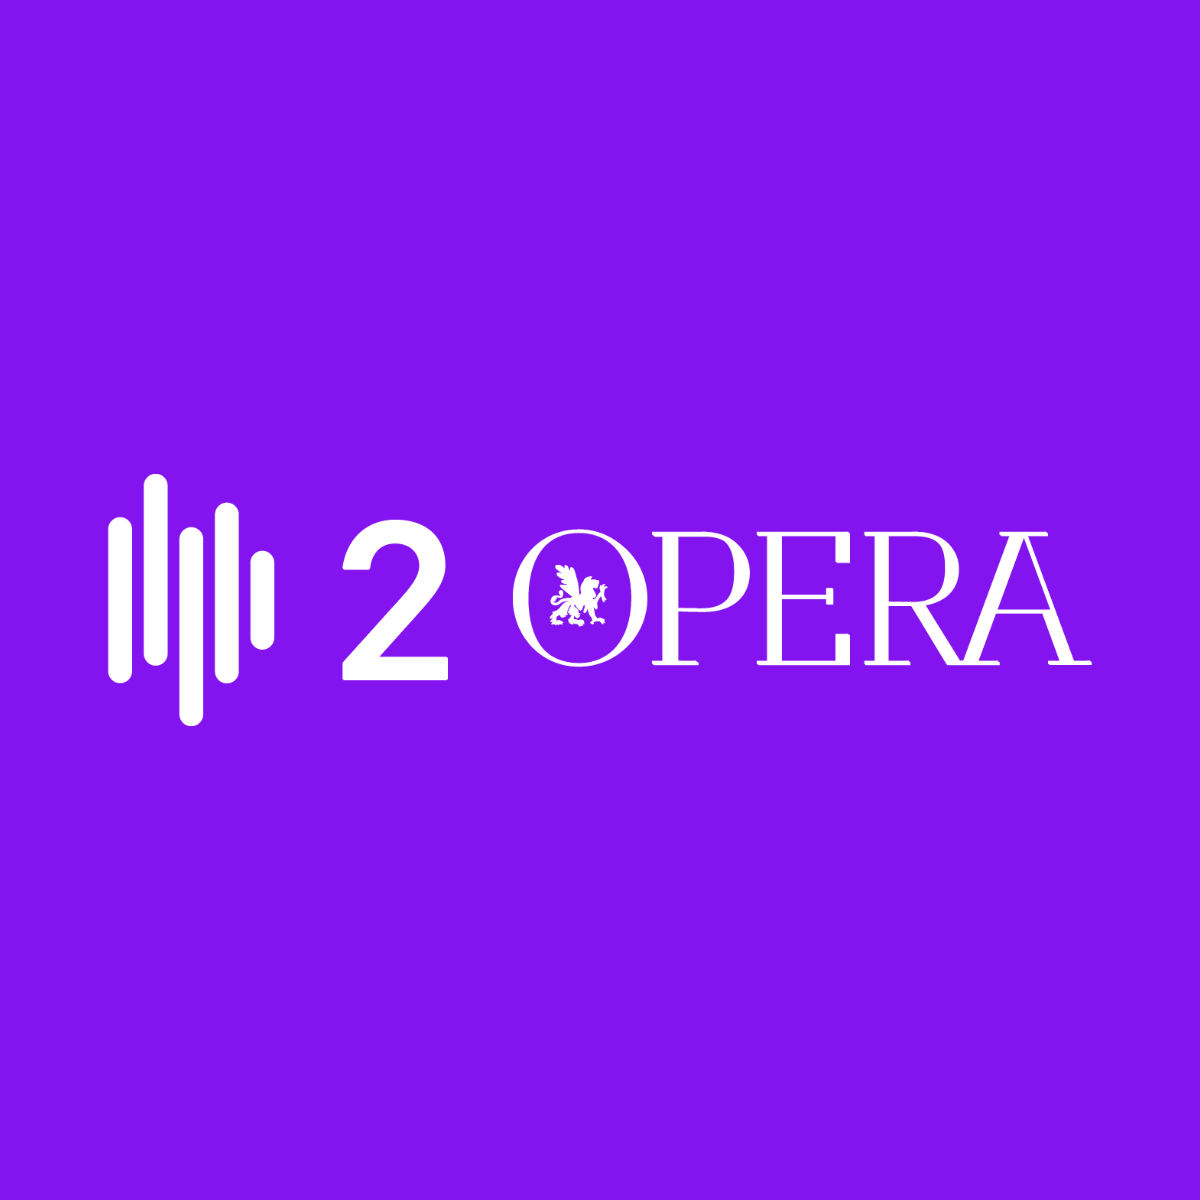 Antena 2 Ópera